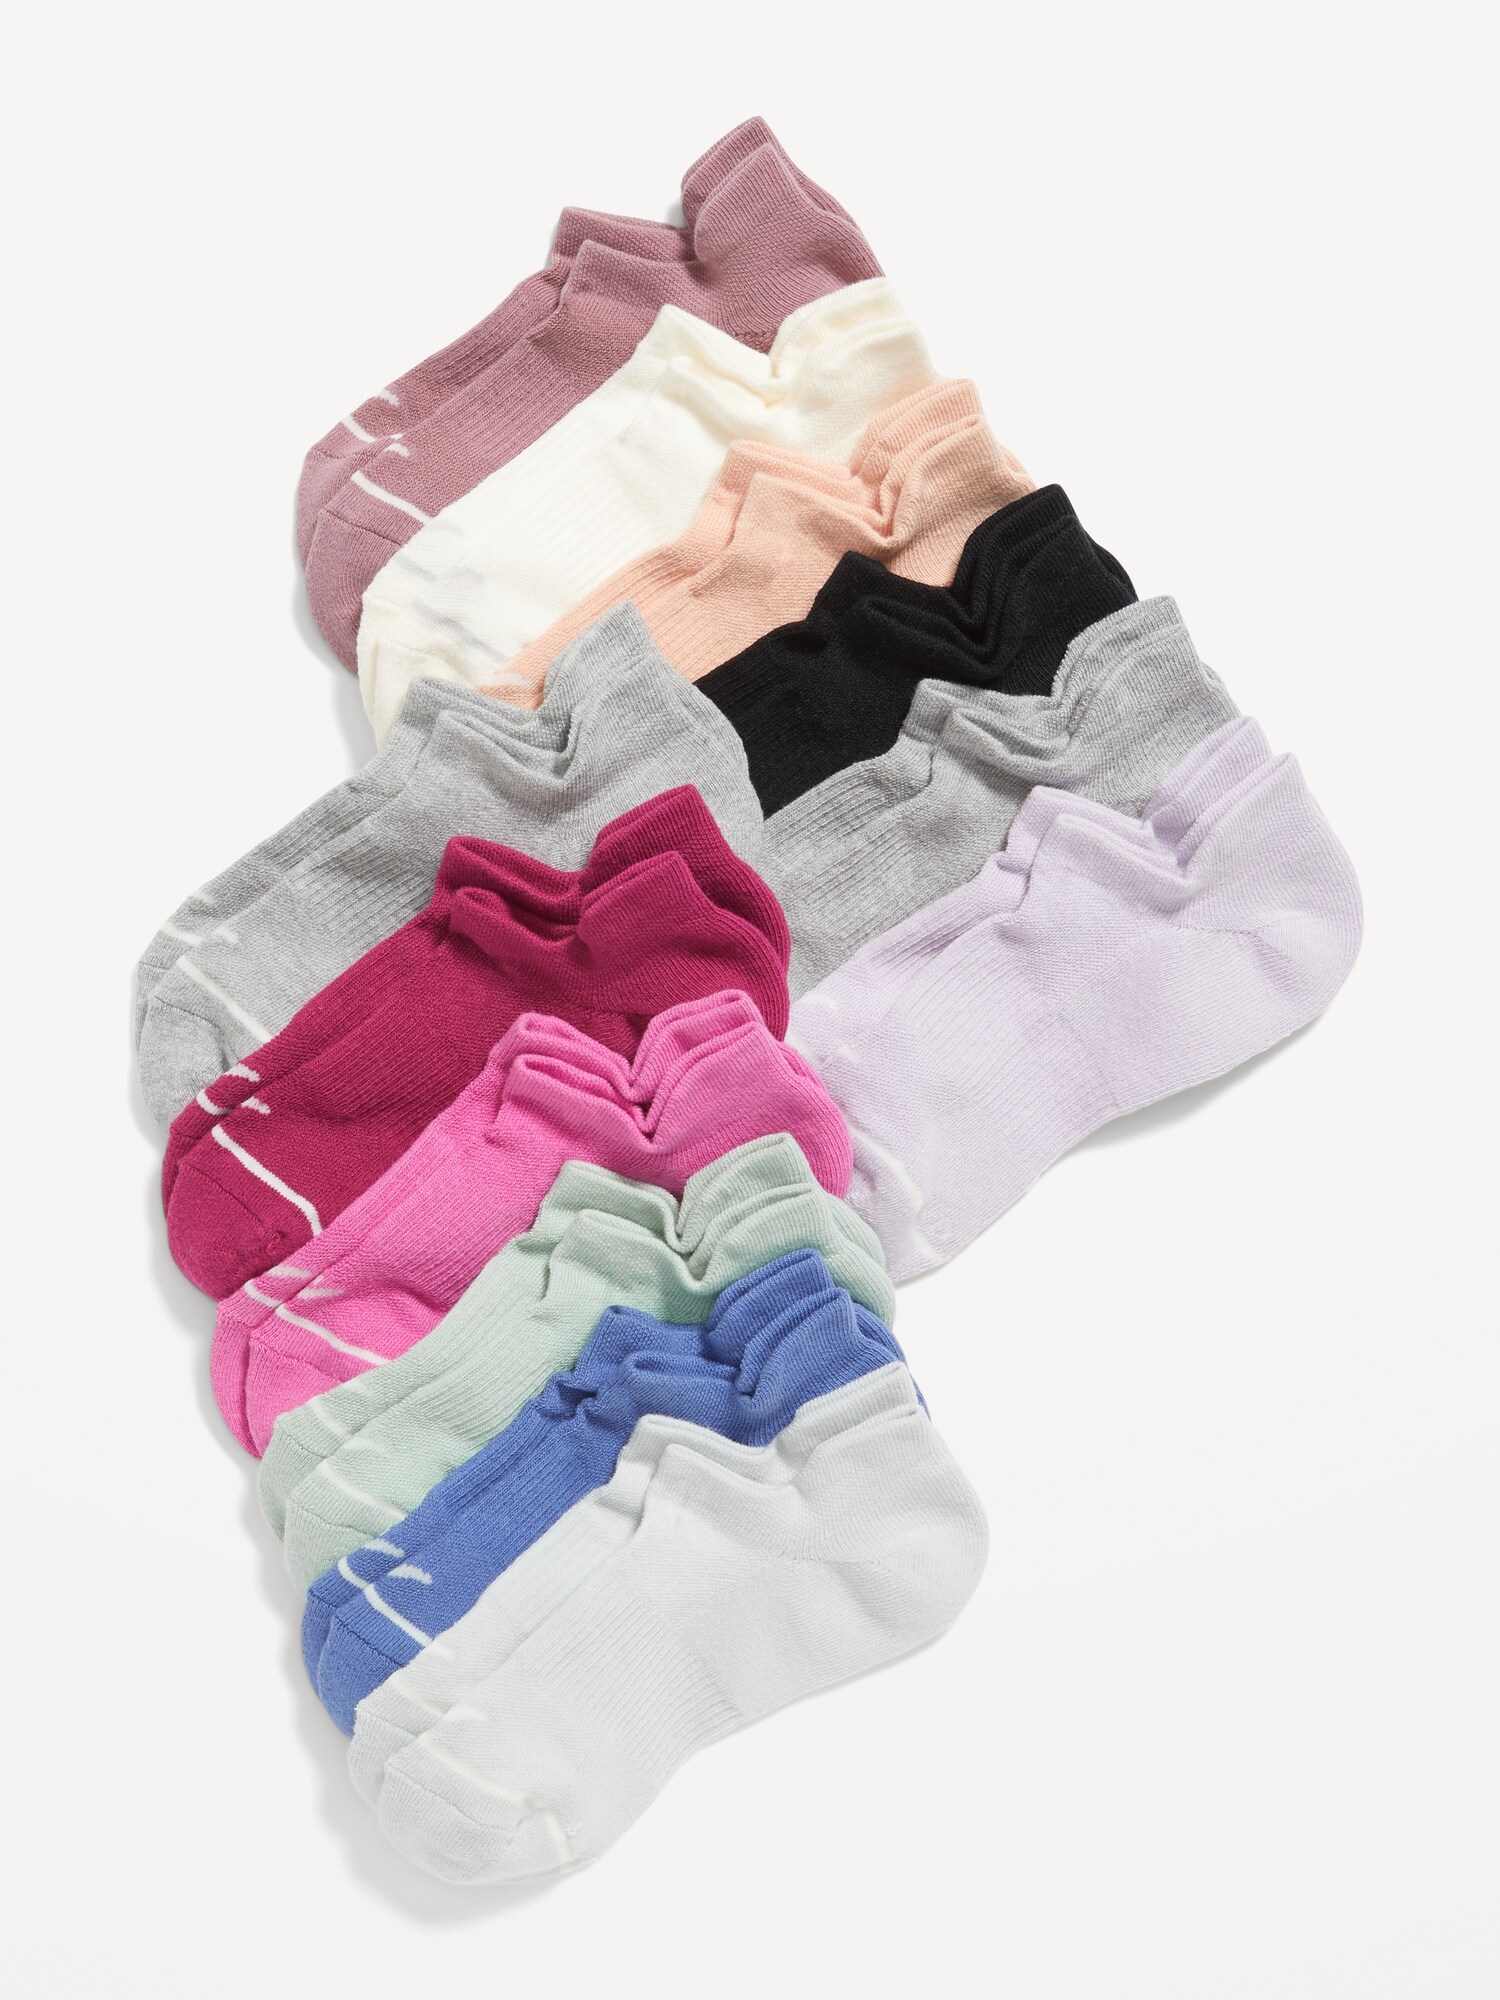 Spandex Socks for Women